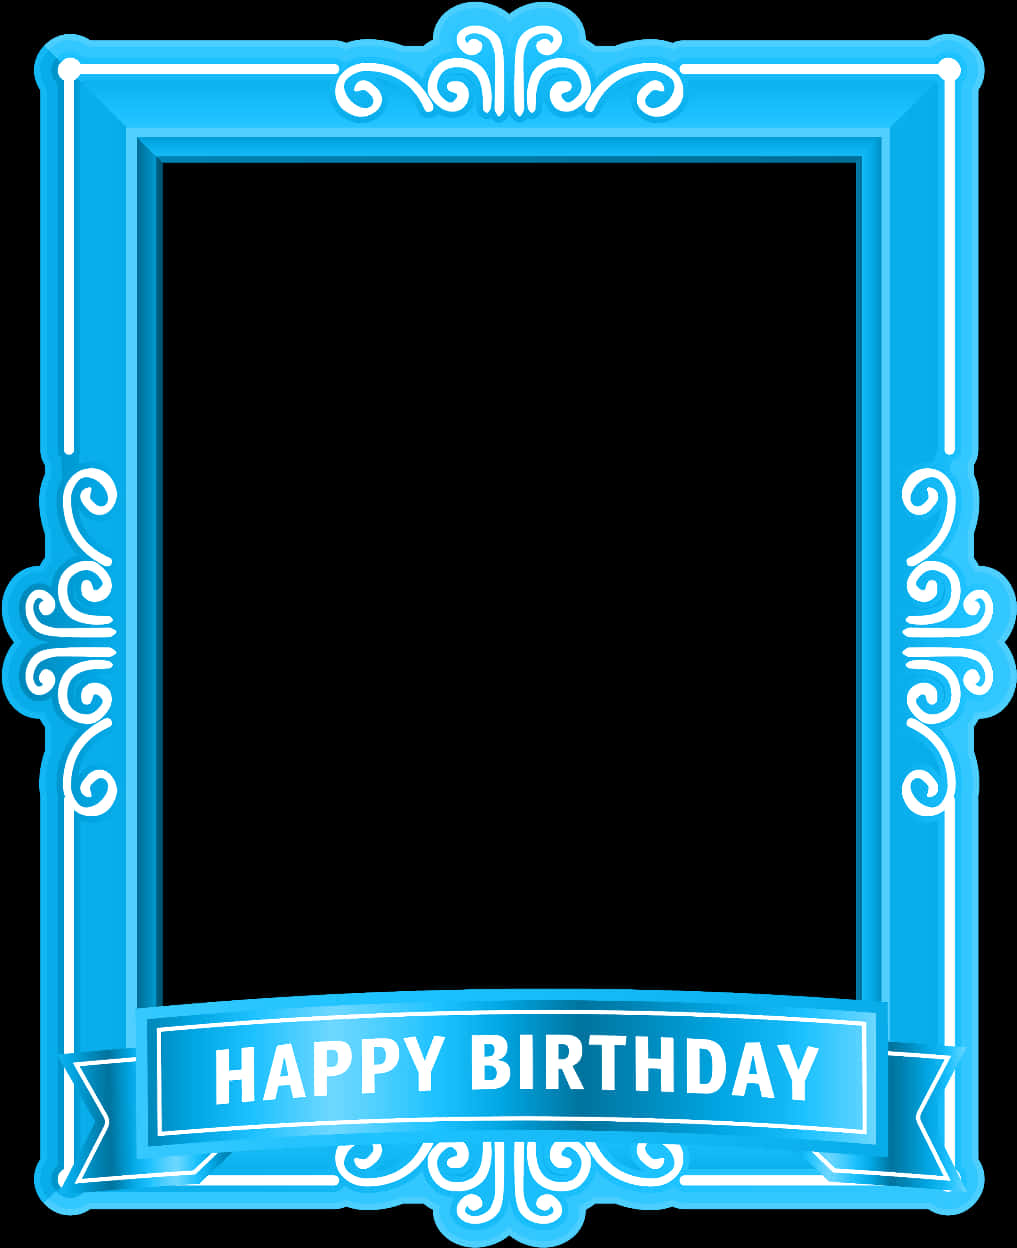 Blue Birthday Photo Frame SVG